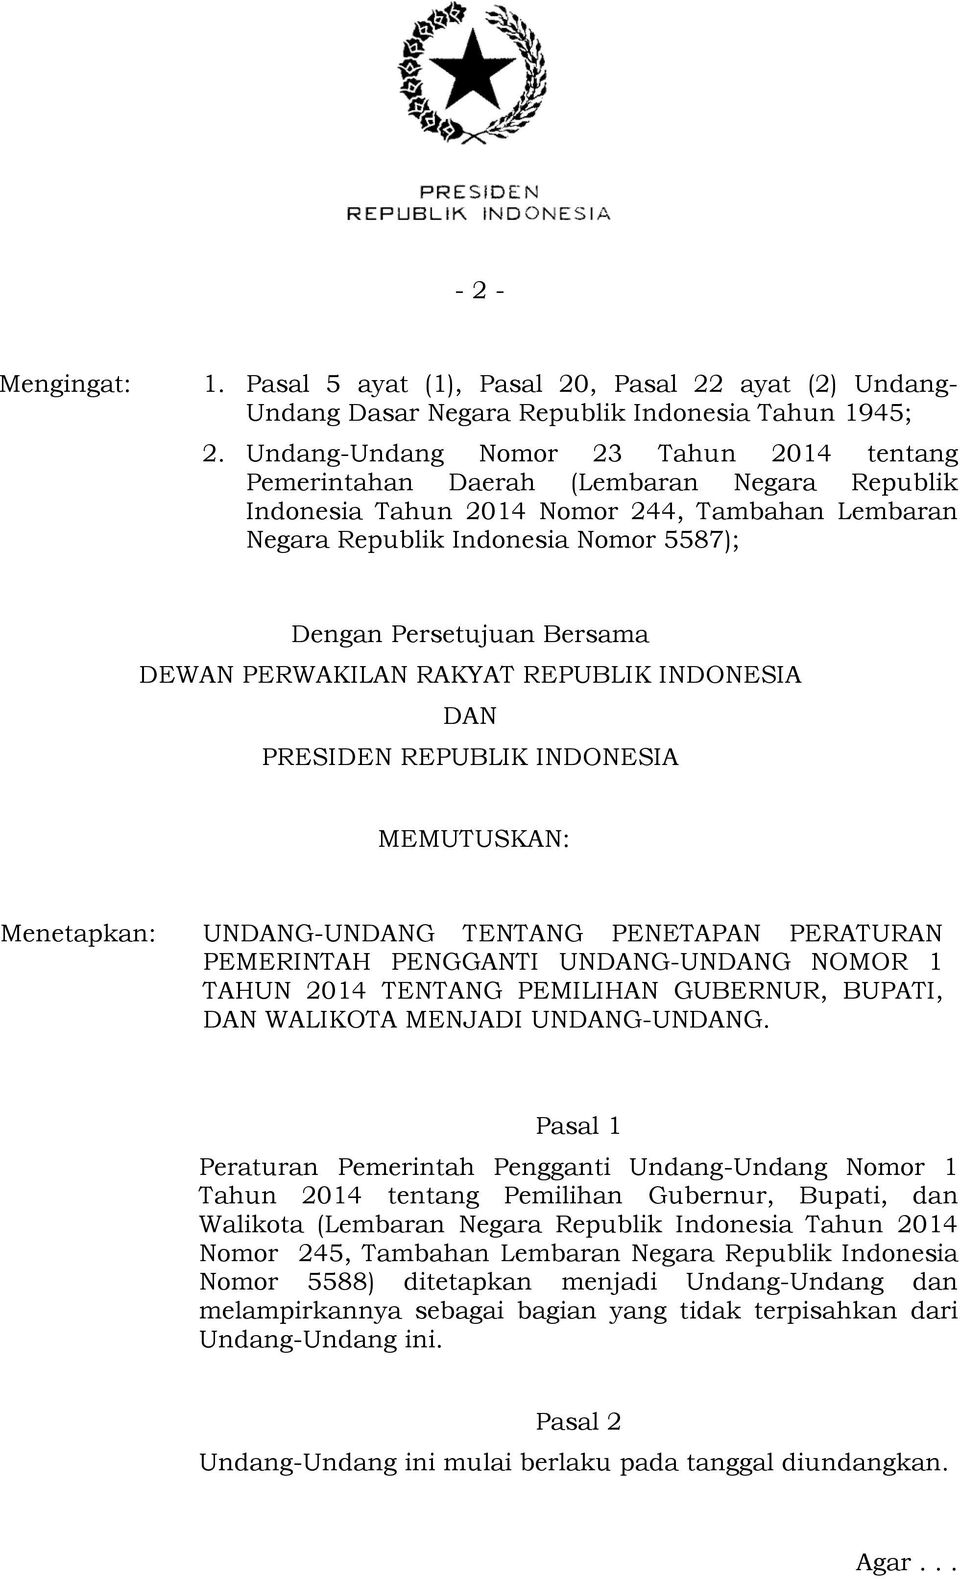 Bersama DEWAN PERWAKILAN RAKYAT REPUBLIK INDONESIA DAN PRESIDEN REPUBLIK INDONESIA MEMUTUSKAN: Menetapkan: UNDANG-UNDANG TENTANG PENETAPAN PERATURAN PEMERINTAH PENGGANTI UNDANG-UNDANG NOMOR 1 TAHUN